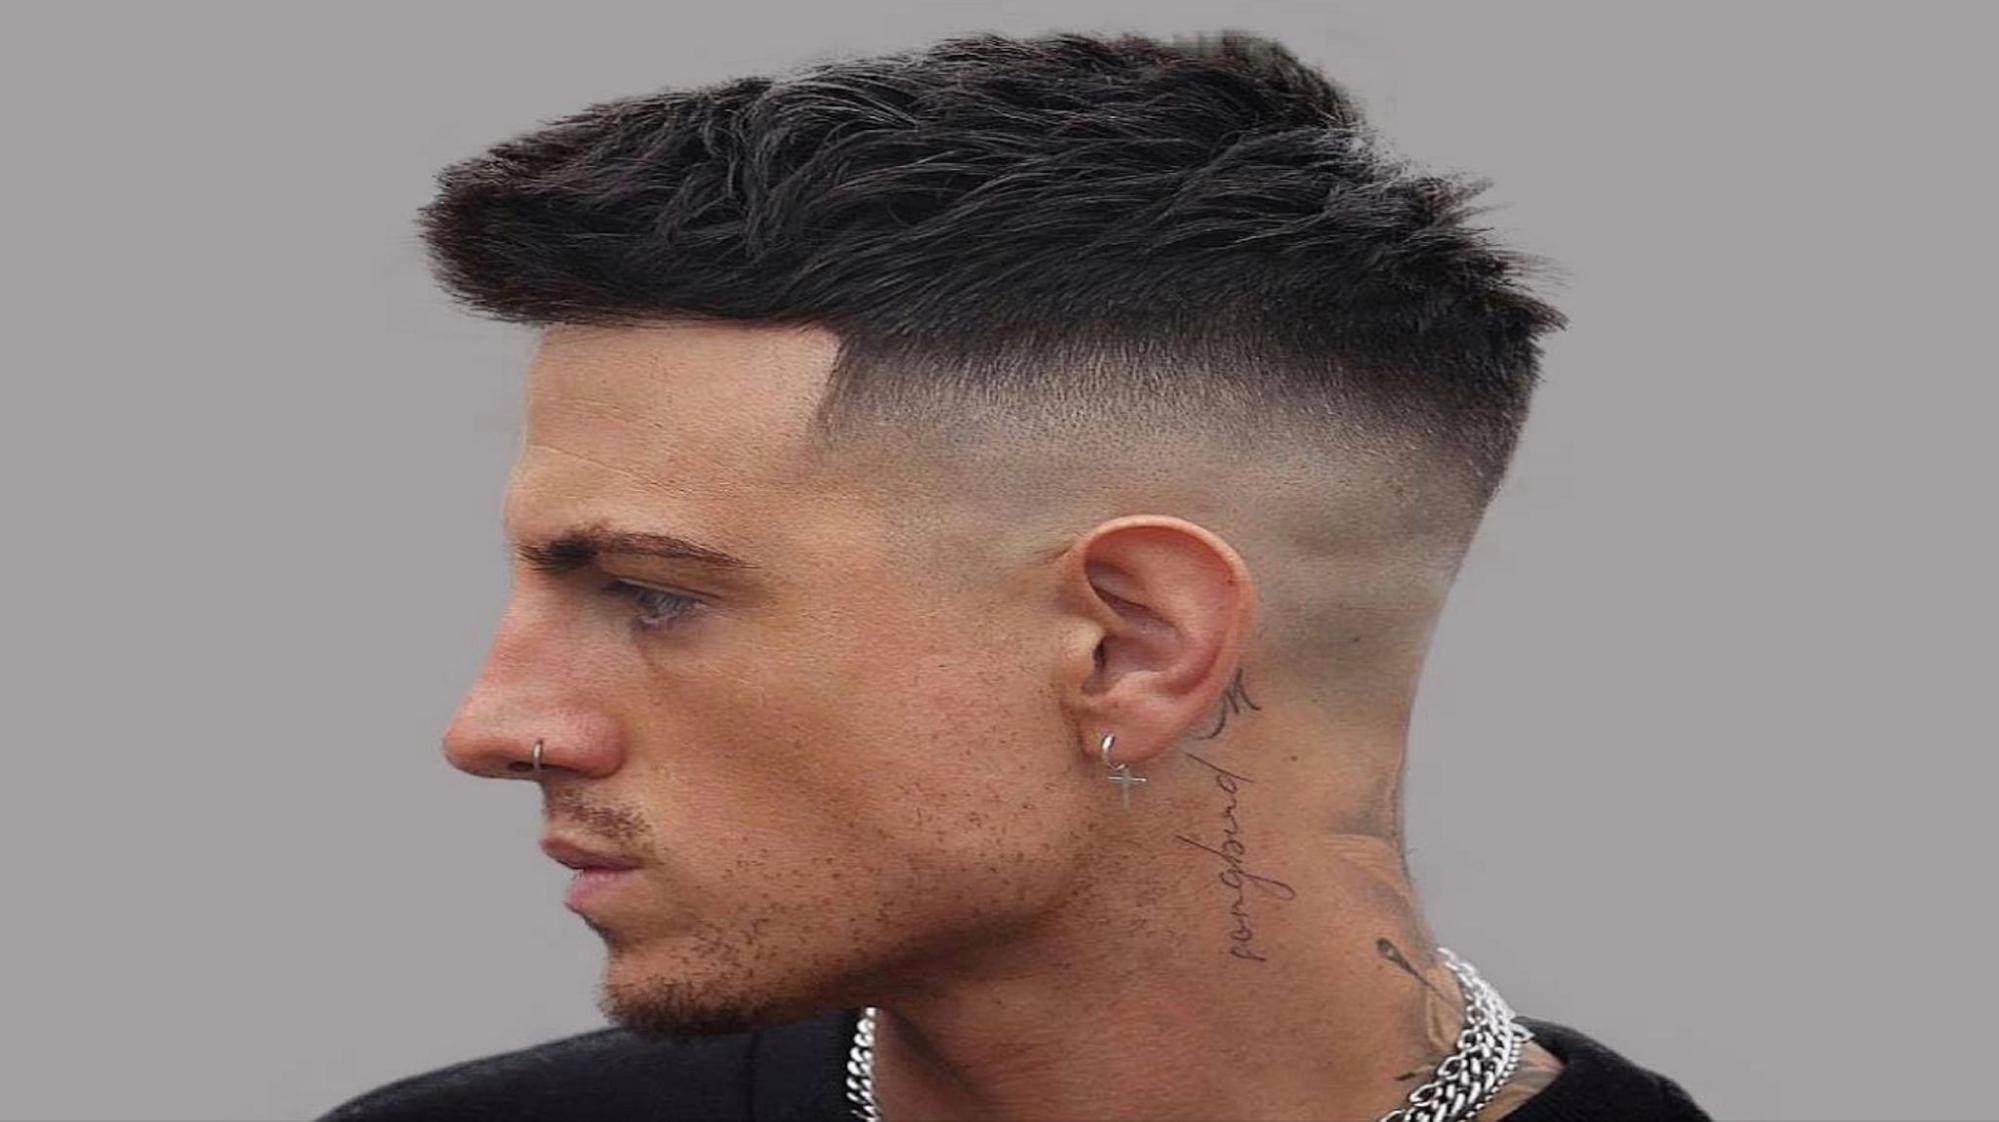 Modern Men's Haircuts: Tipos de Cortes de Cabello Para Hombres - My ...